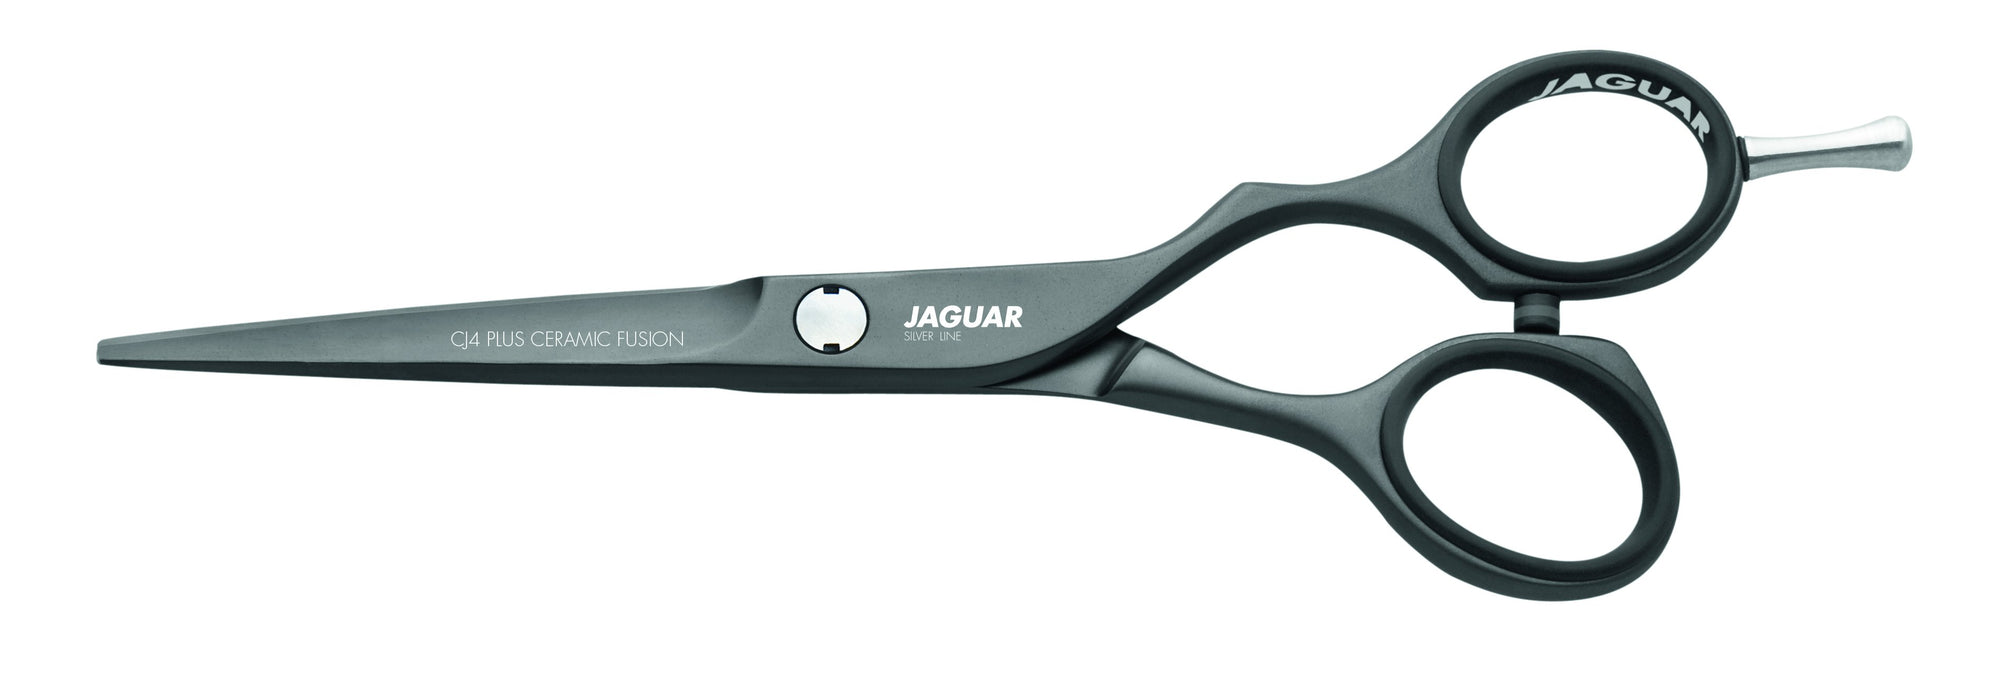 Jaguar CJ4 Plus Ceramic Fusion (4396640272467)